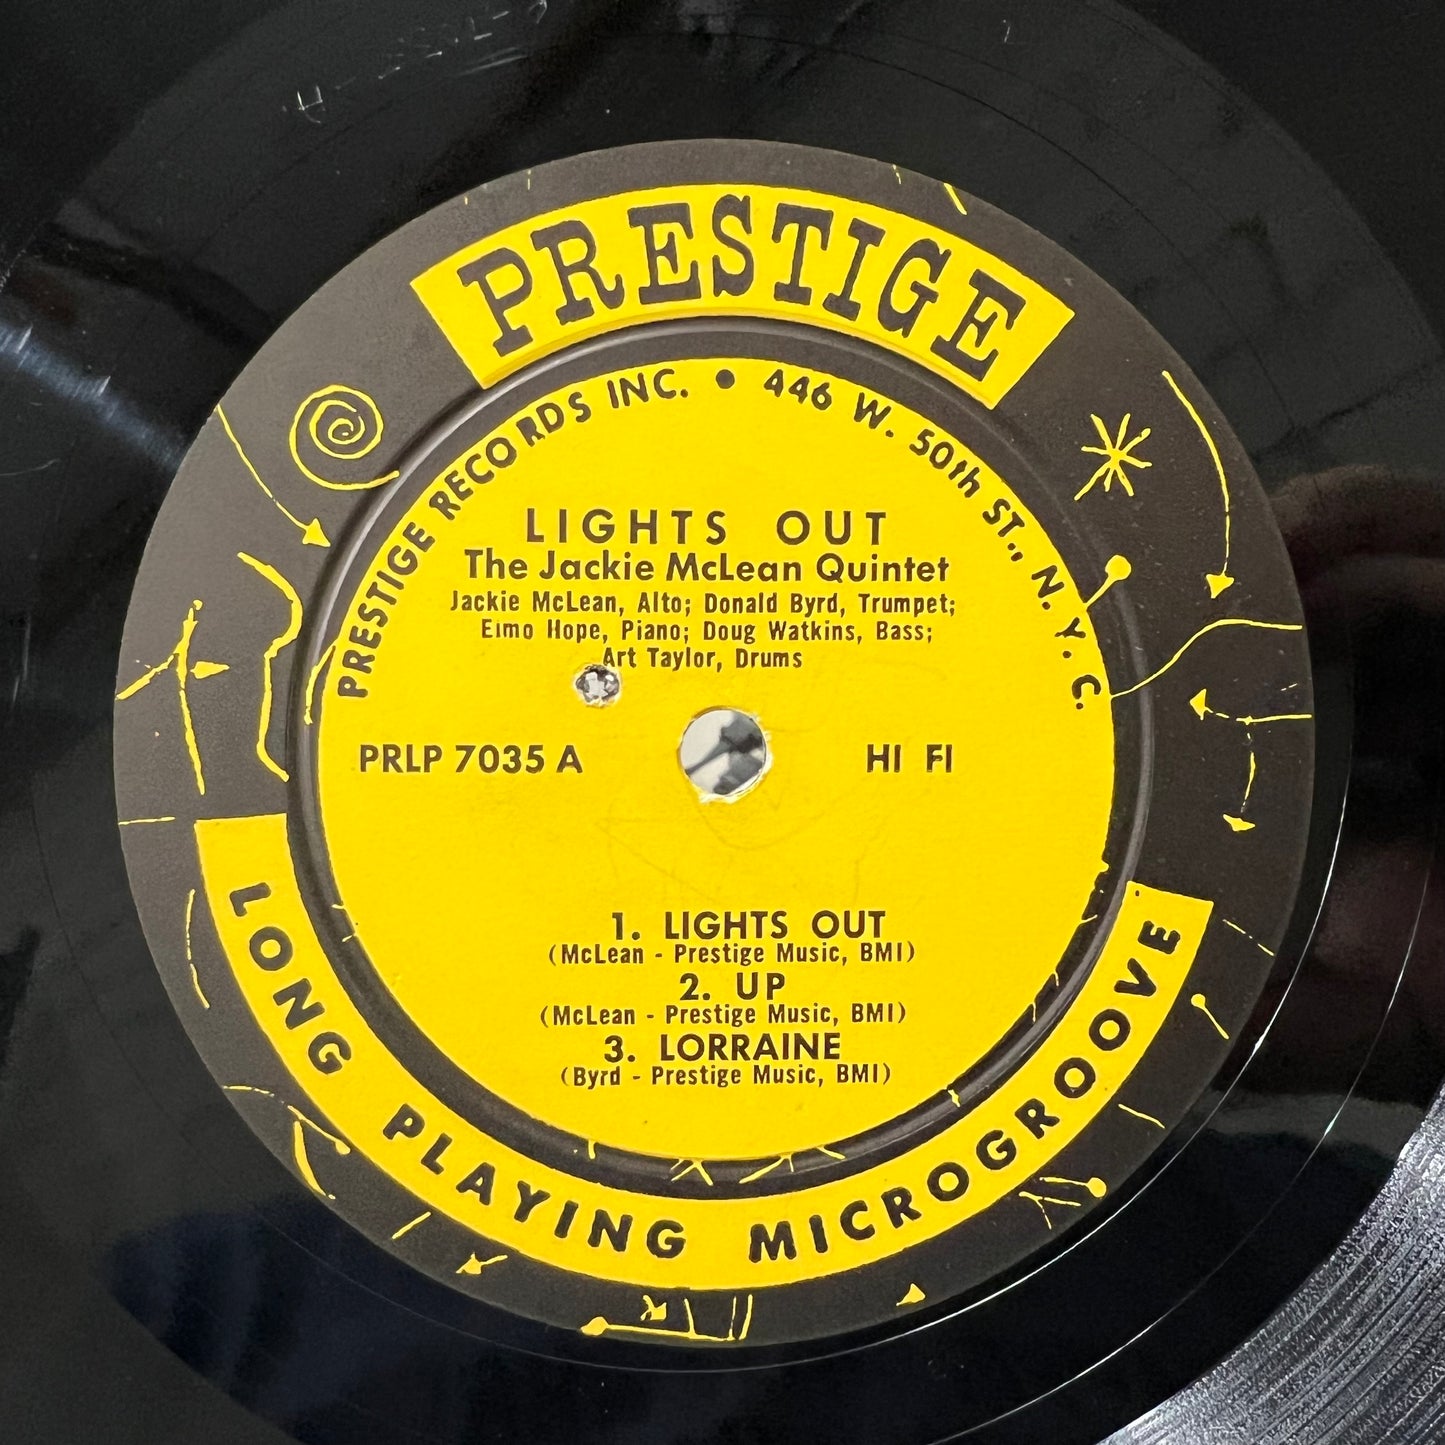 El quinteto de Jackie McLean con Donald Byrd y Elmo Hope – ¡Apaga las luces! - LP de prestigio